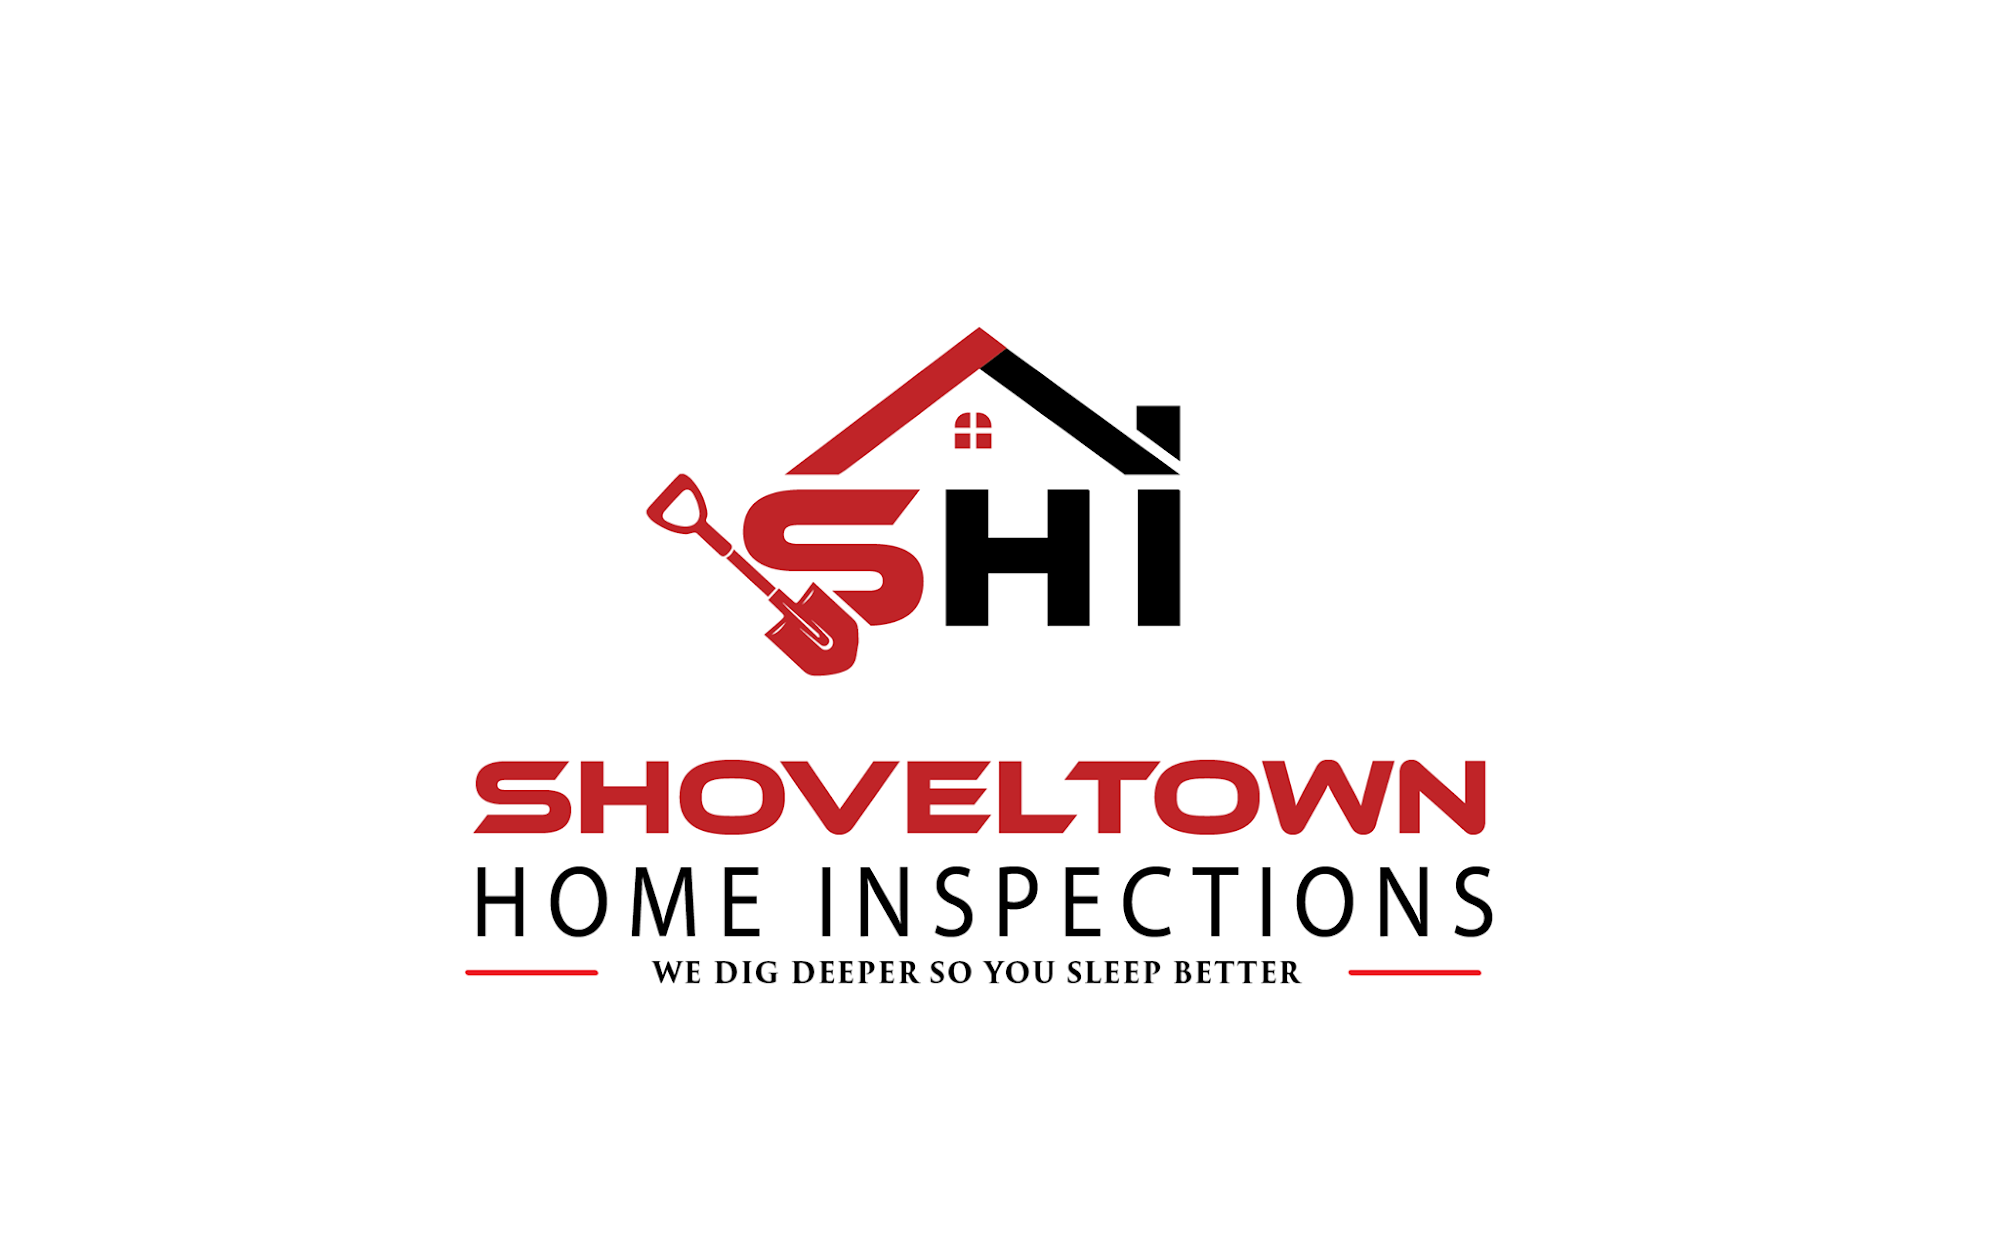 Shoveltown Home Inspections LLC 54 Sheridan St, North Easton Massachusetts 02356